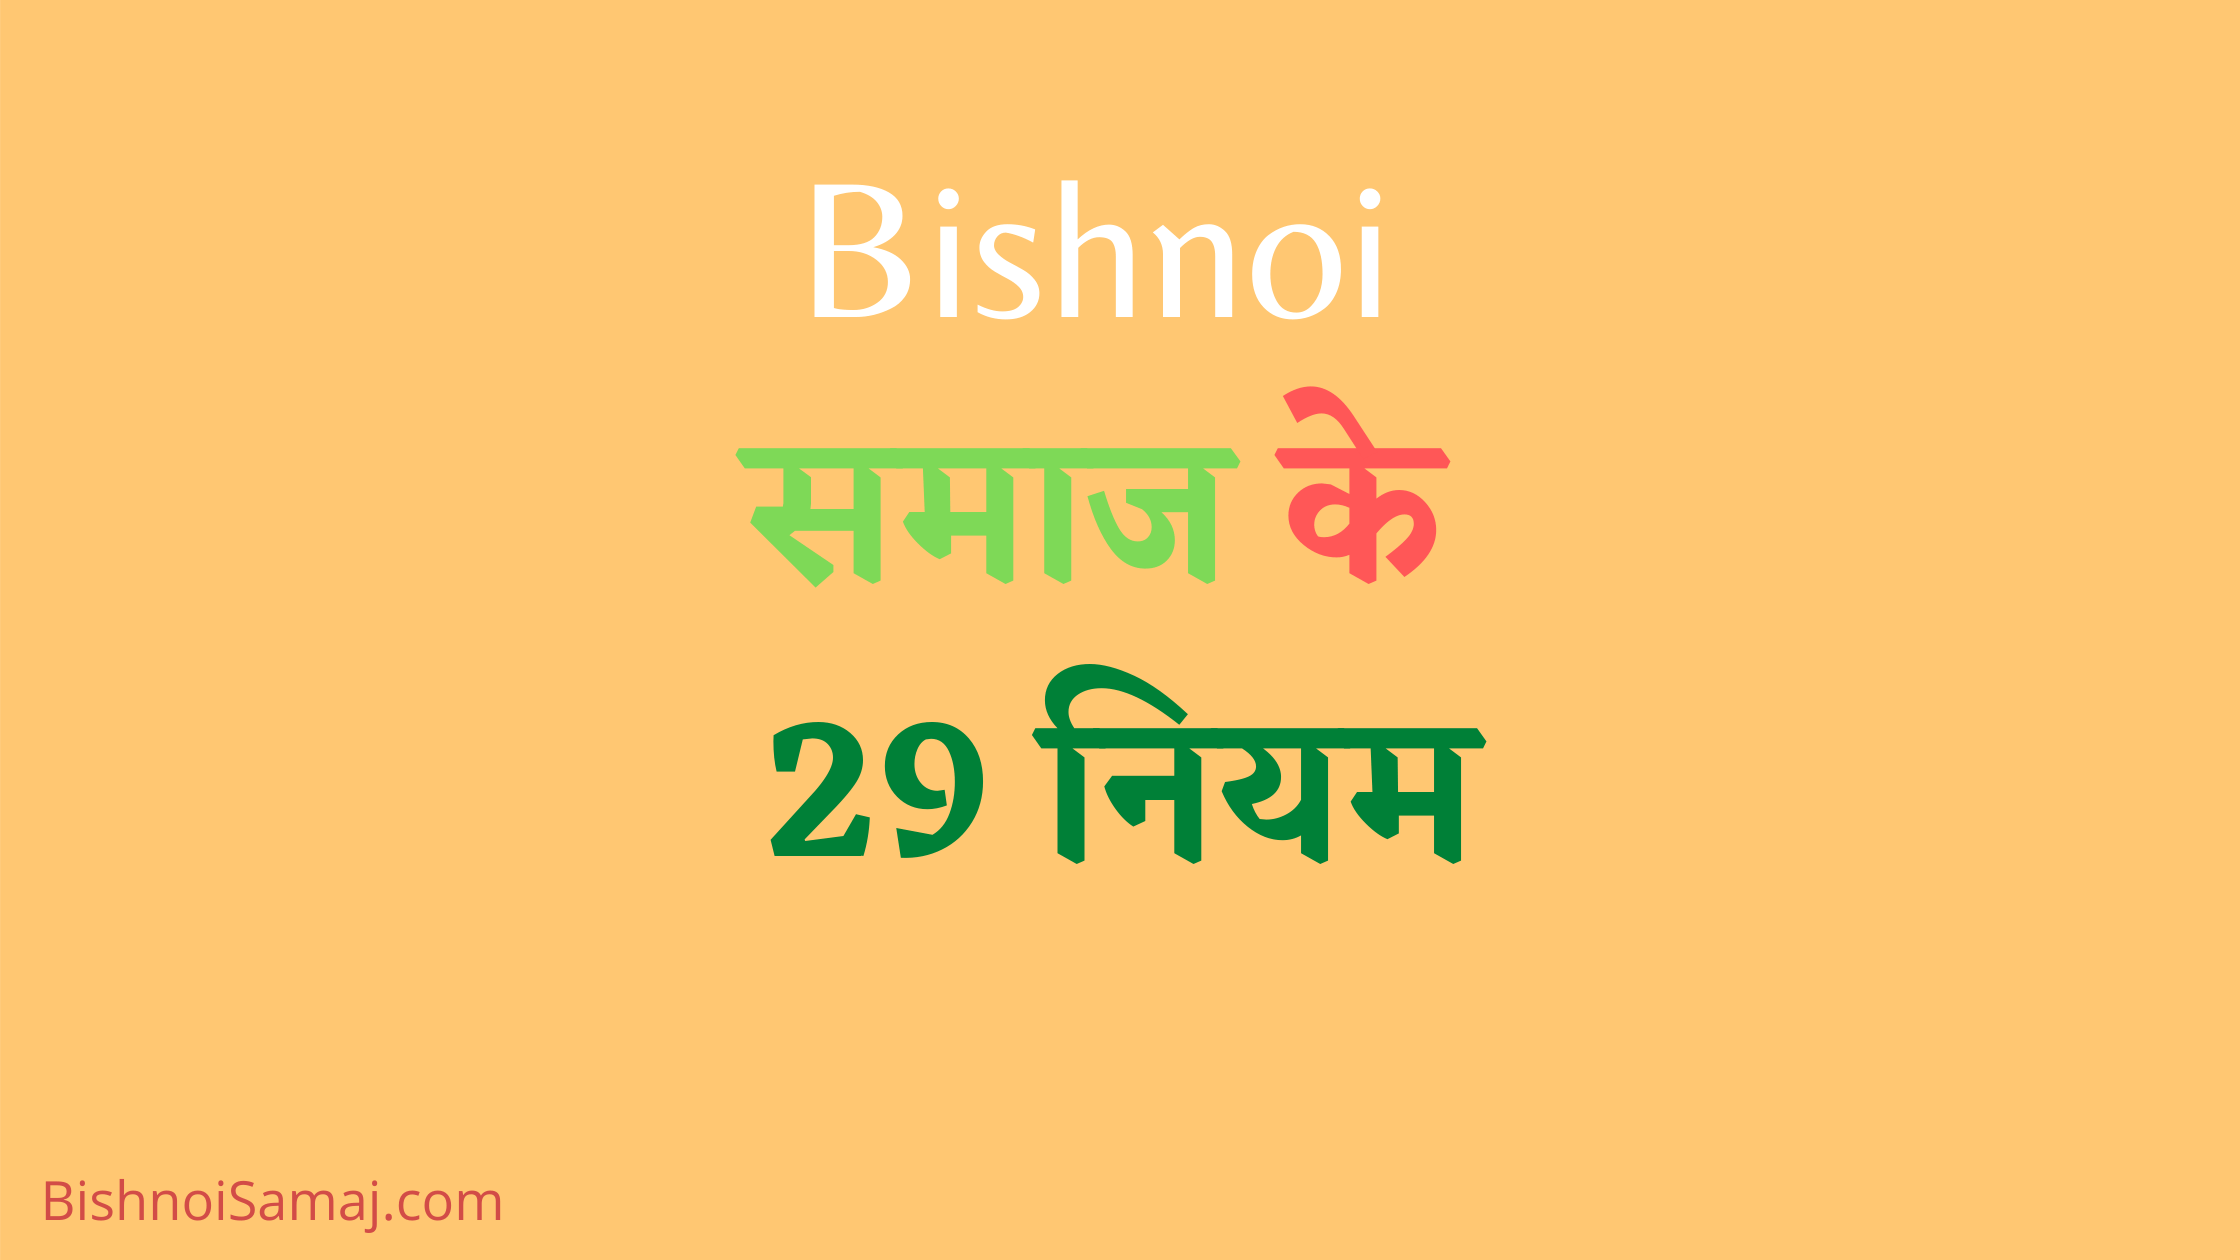 Bishnoi-Samaj